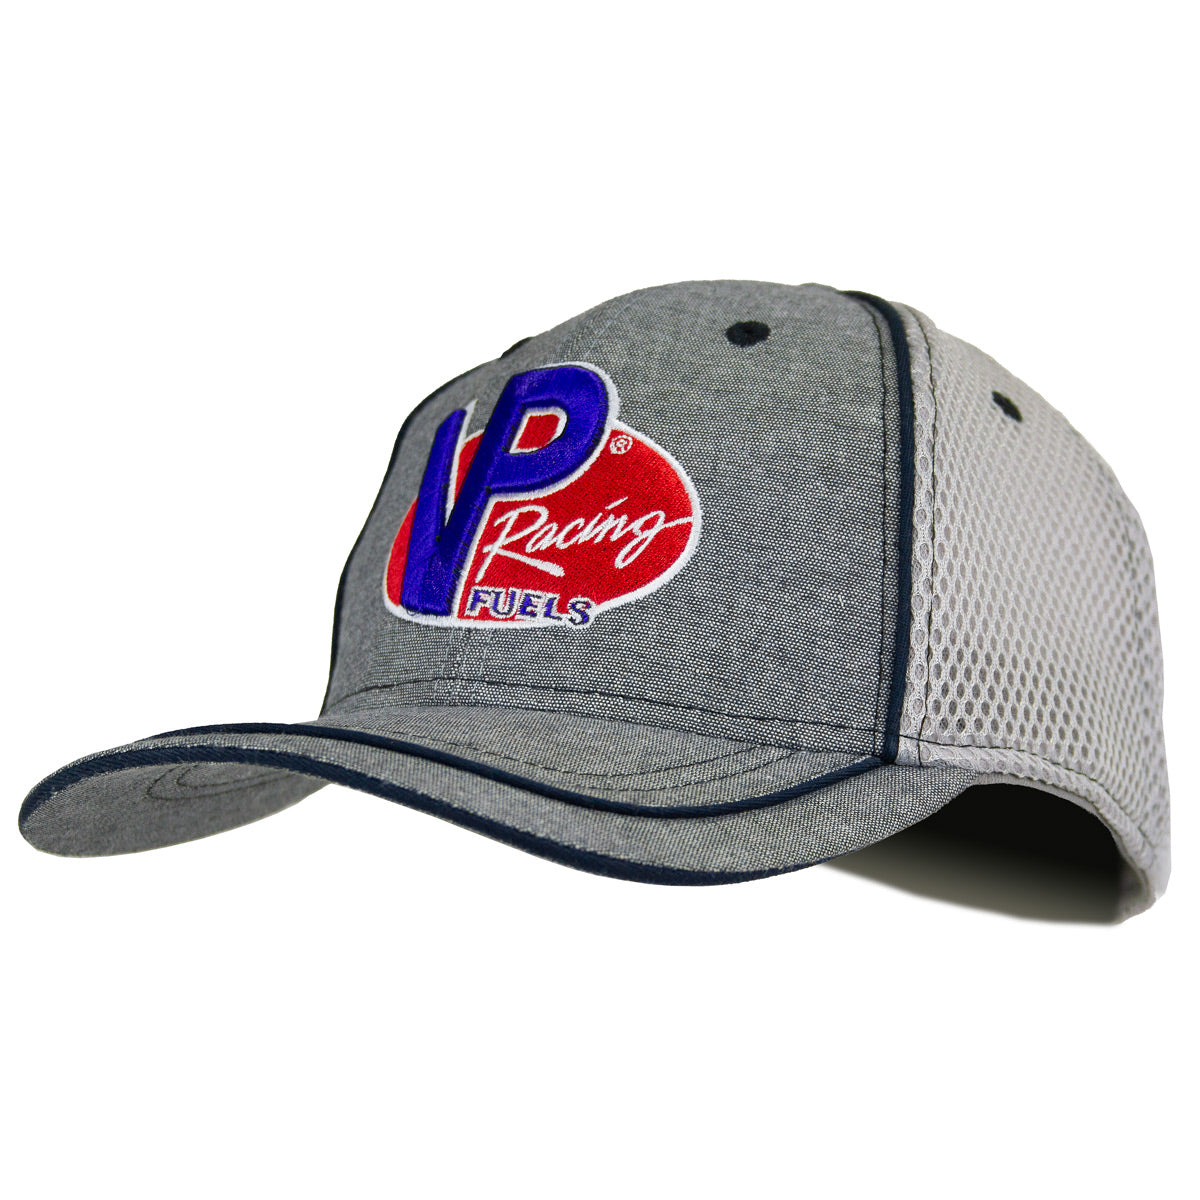 VP Racing Hat - Grey